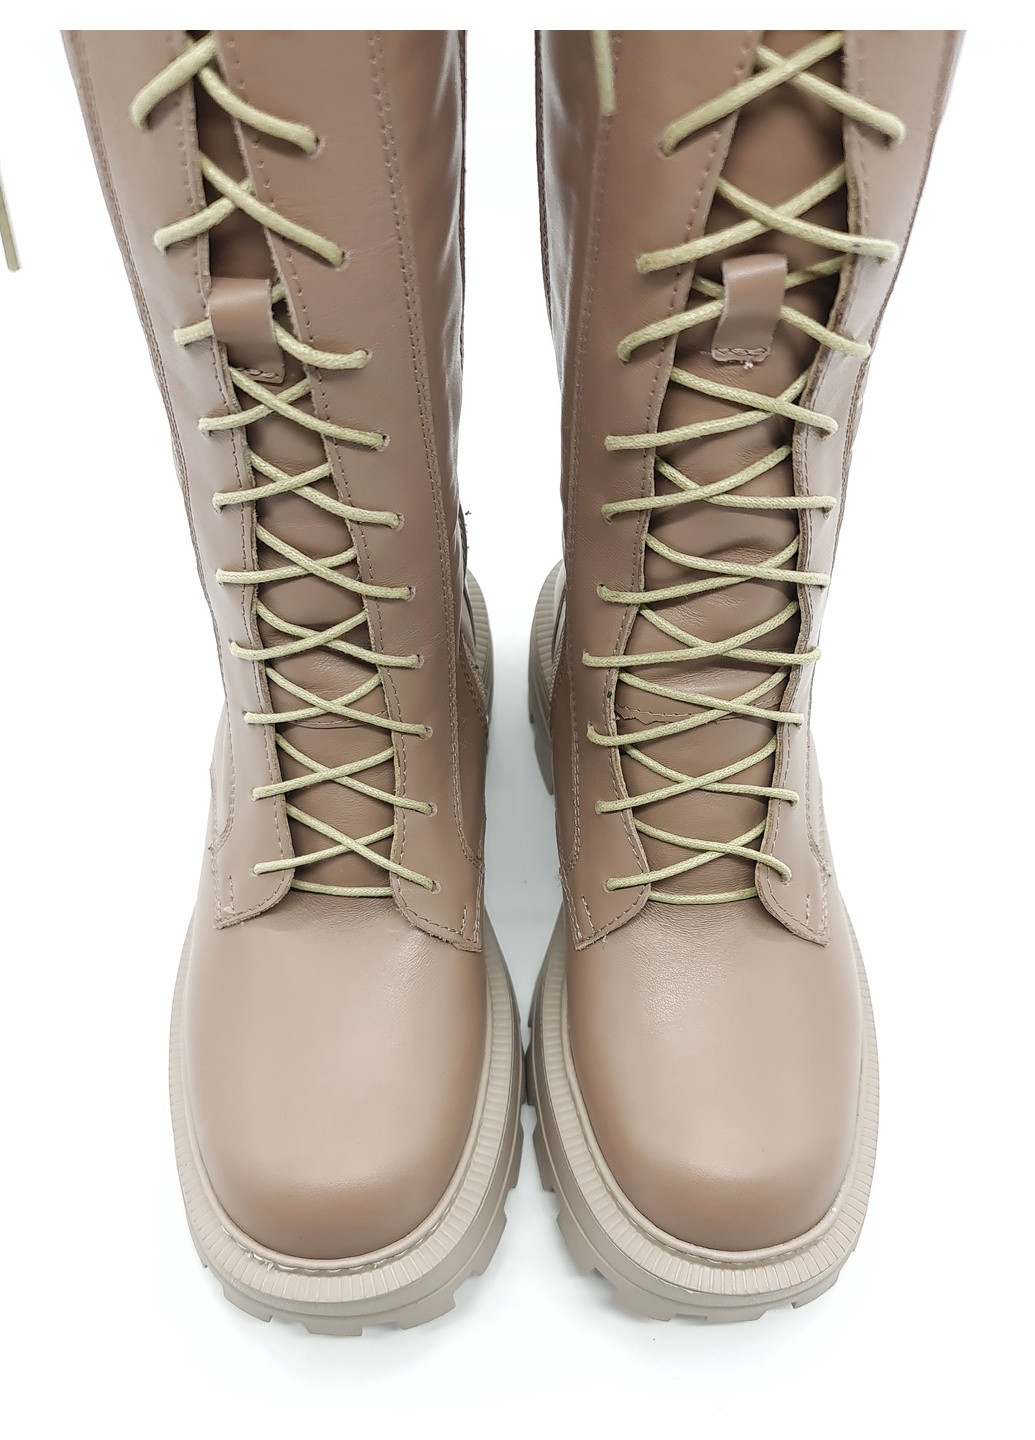 Жіночі чоботи єврозима мутон шкіряні P-14-7 255 мм 40(р) patterns (259326285)